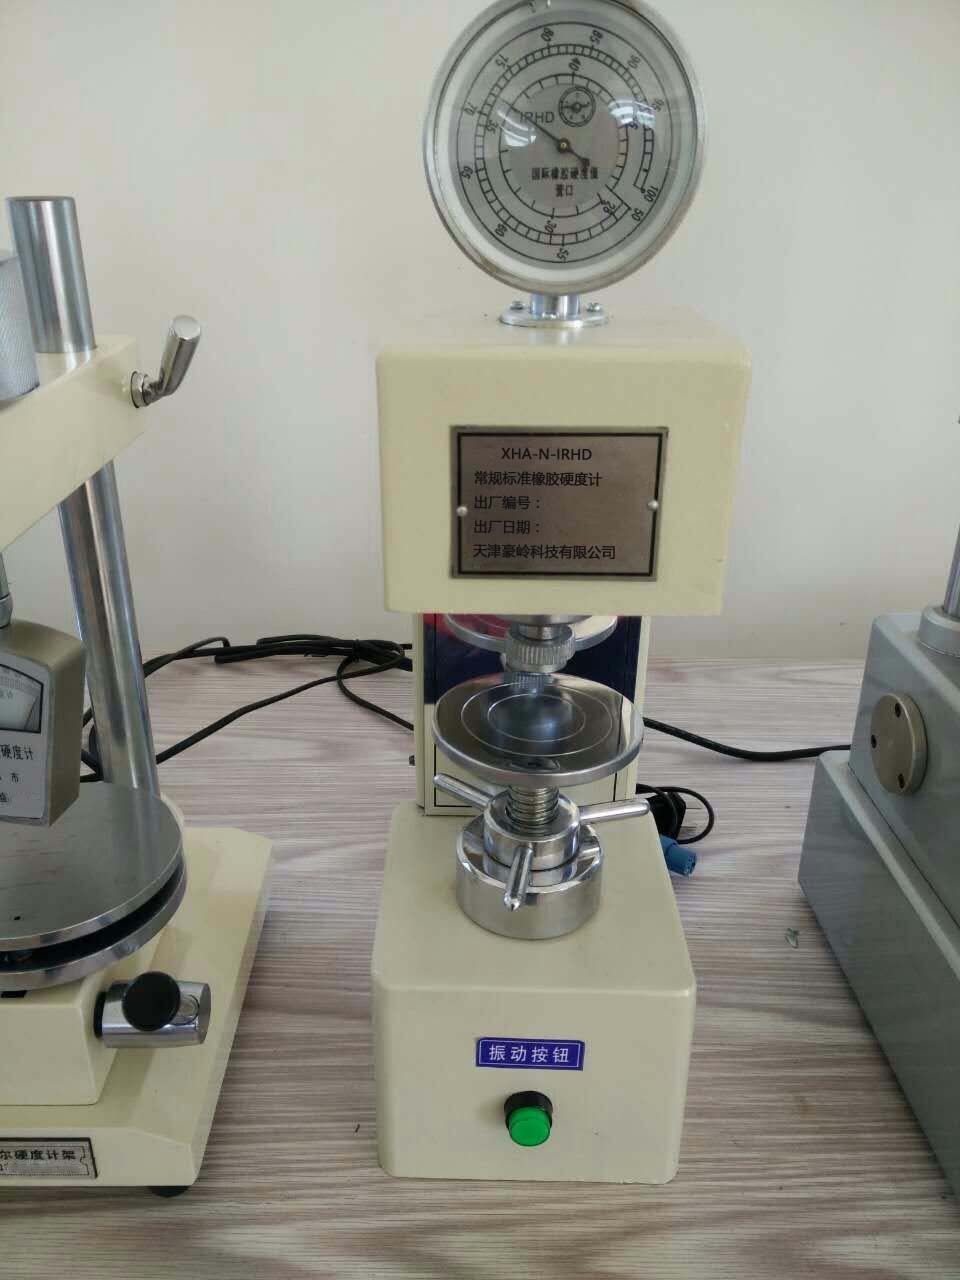 XHB-N-IRHD常规国际橡胶硬度计_机械常规国际橡胶硬度计